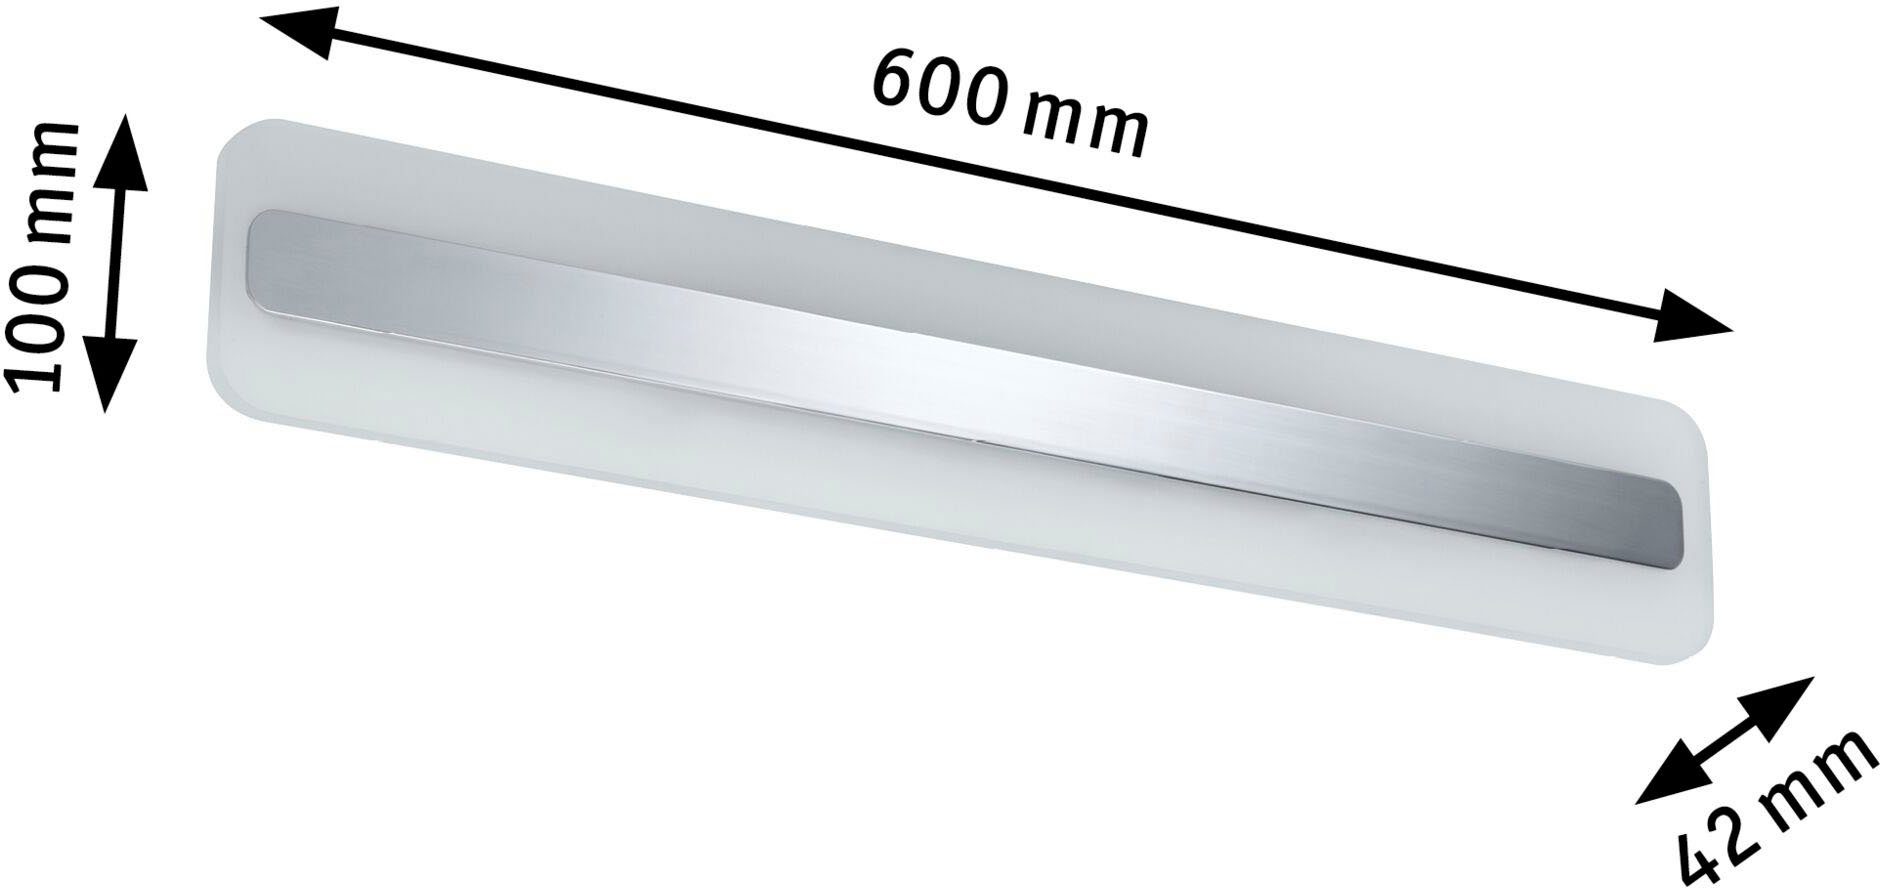 Paulmann Spiegelleuchte Lukida, LED fest Badezimmerleuchte integriert, Warmweiß